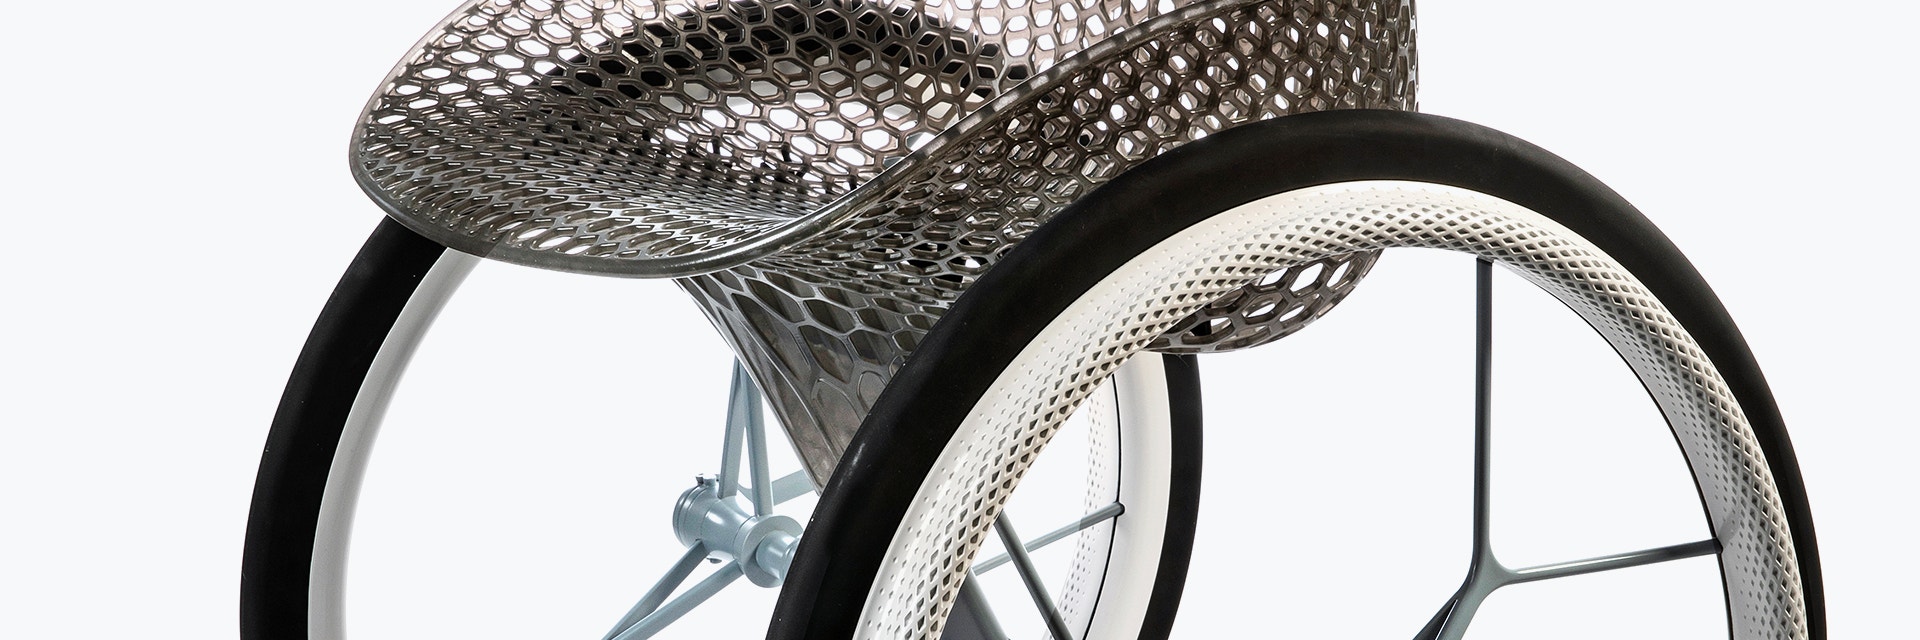 Vista della sezione centrale di un sedile geometrico stampato in 3D da un prototipo stampato in 3D di una sedia a rotelle personalizzata dall'aspetto futuristico, utilizzando più materiali di stampa 3D. Il sedile è in struttura reticolare e realizzato in resina grigia traslucida. I raggi delle ruote sono realizzati in metallo stampato in 3D.